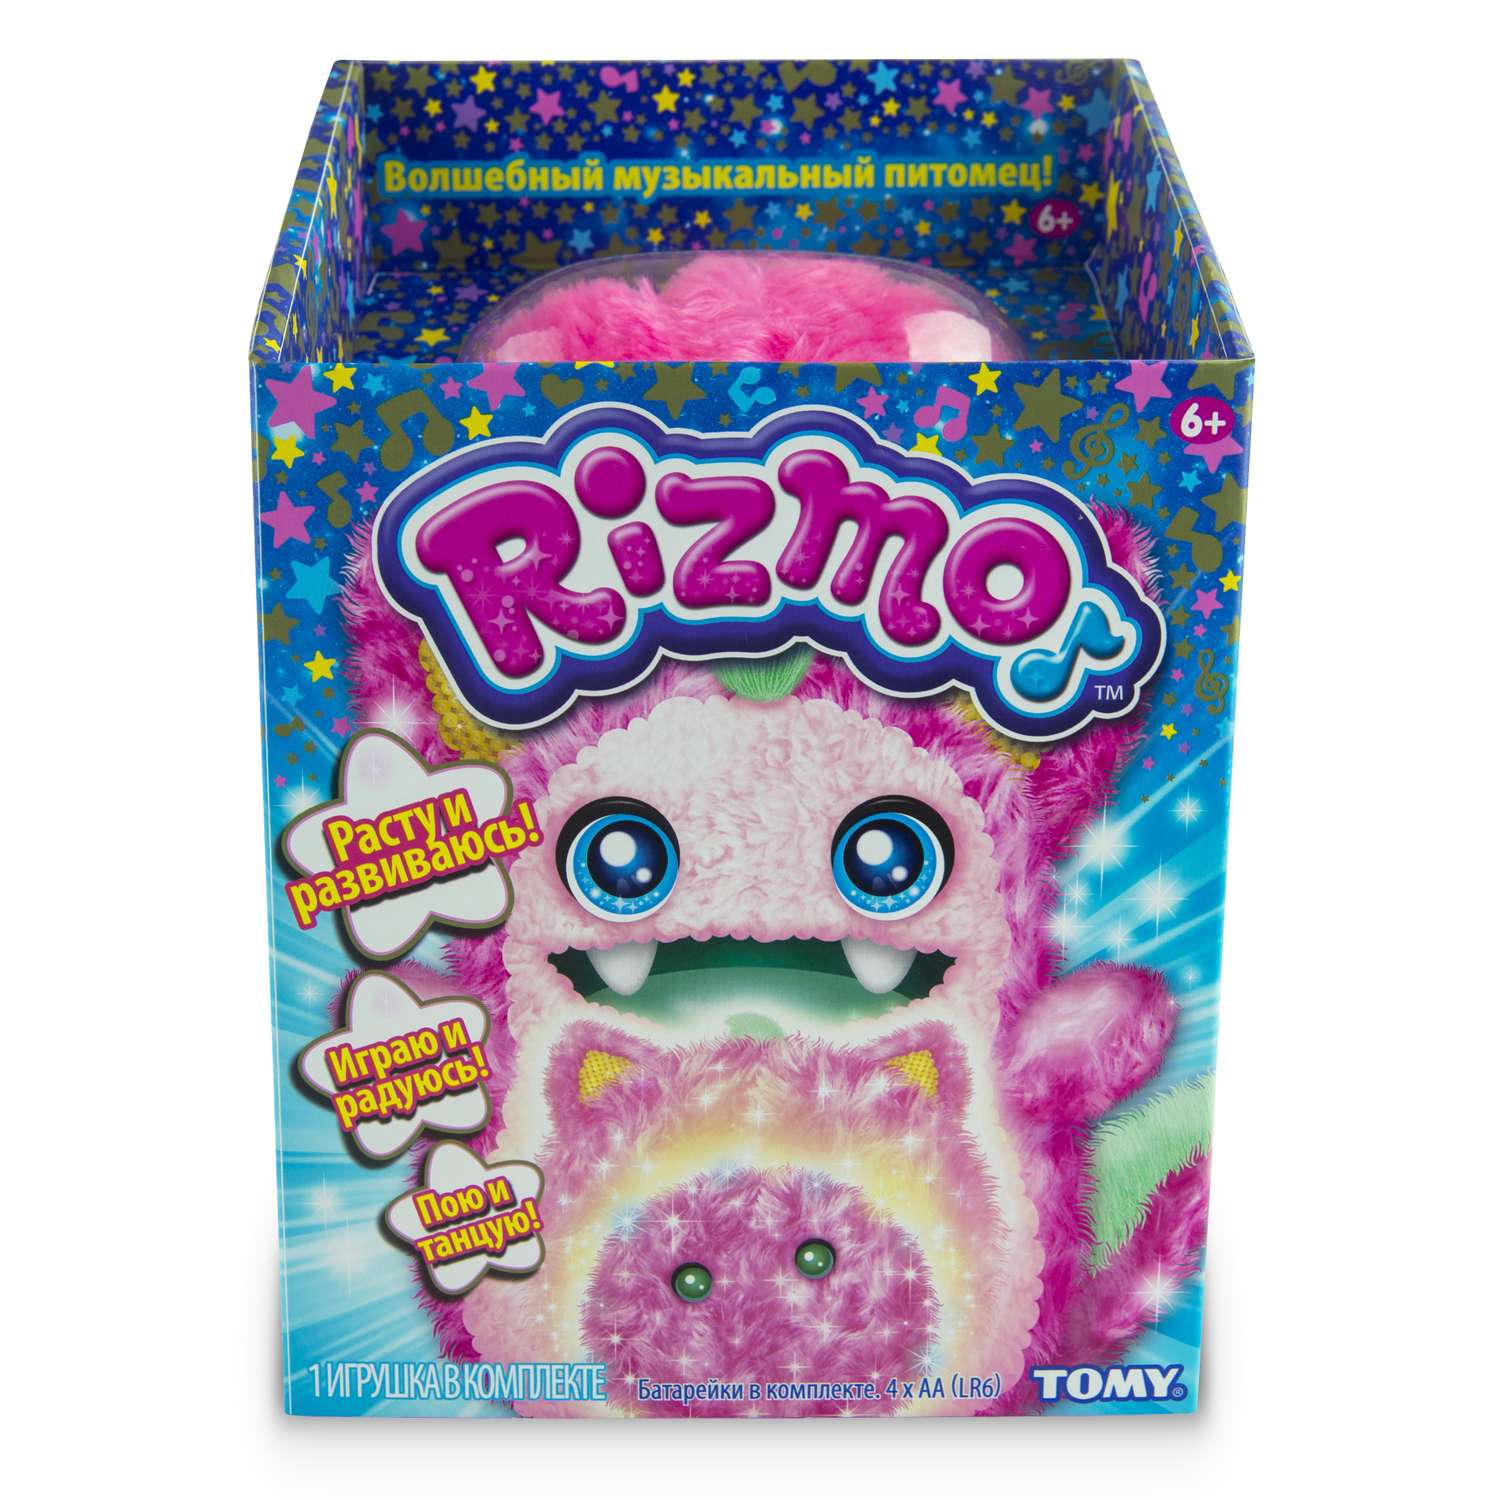 Игрушка мягкая Rizmo Berry интерактивная в непрозрачной упаковке (Сюрприз) 37054 - фото 2